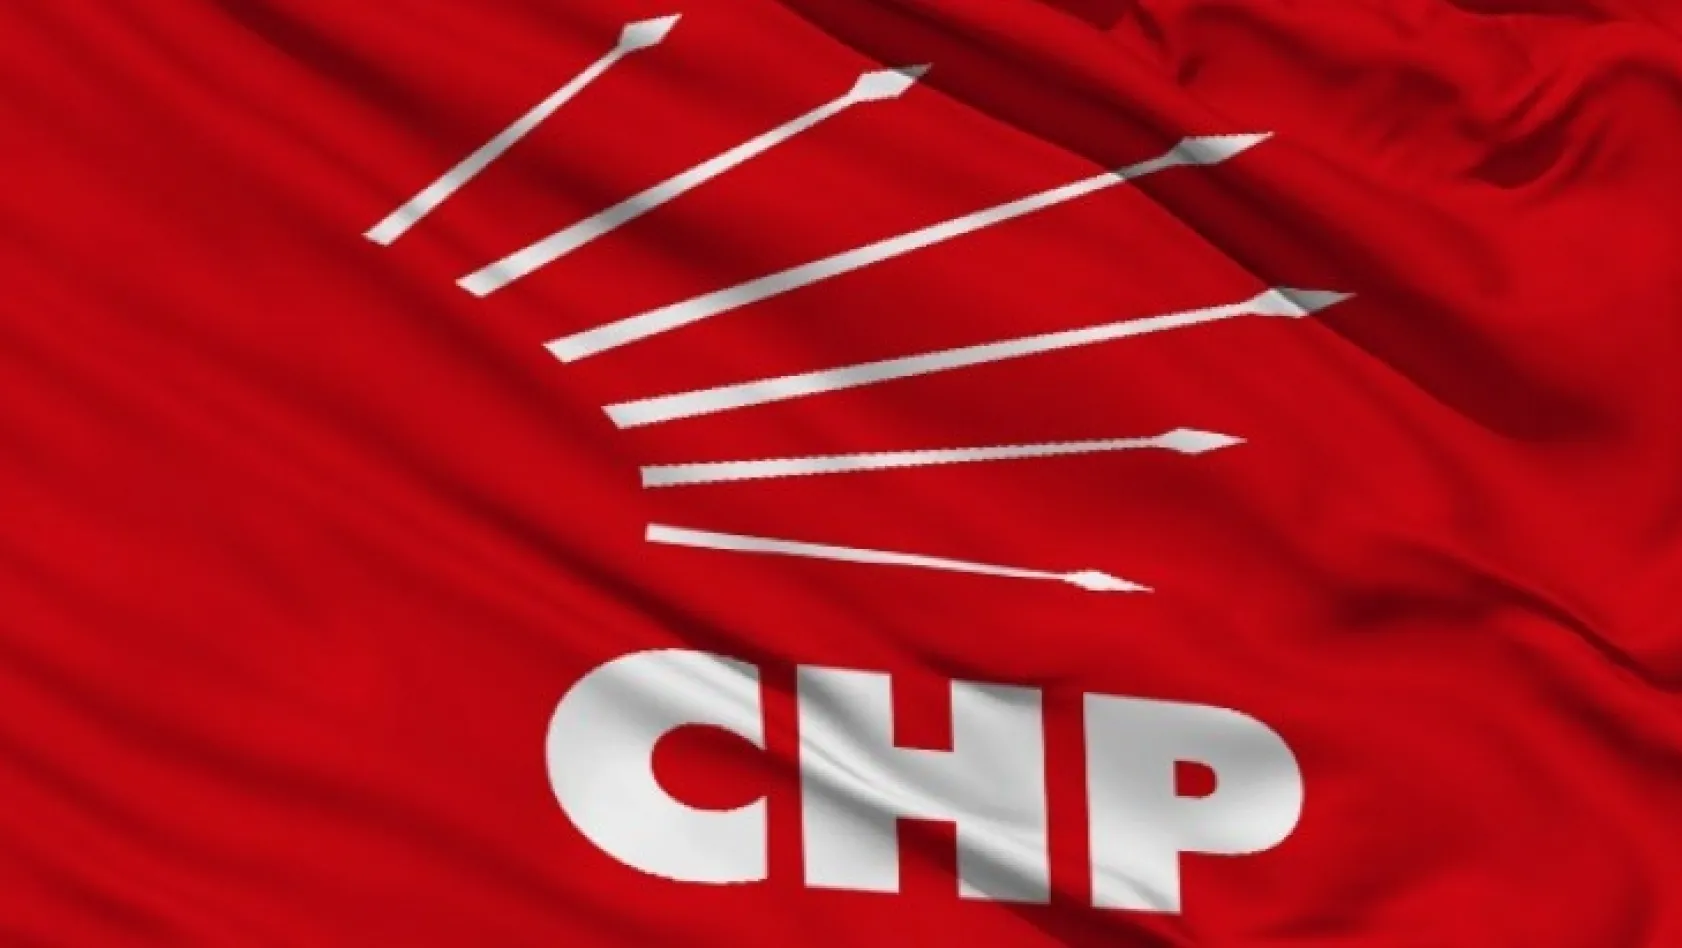 CHP'nin adayları belli oldu